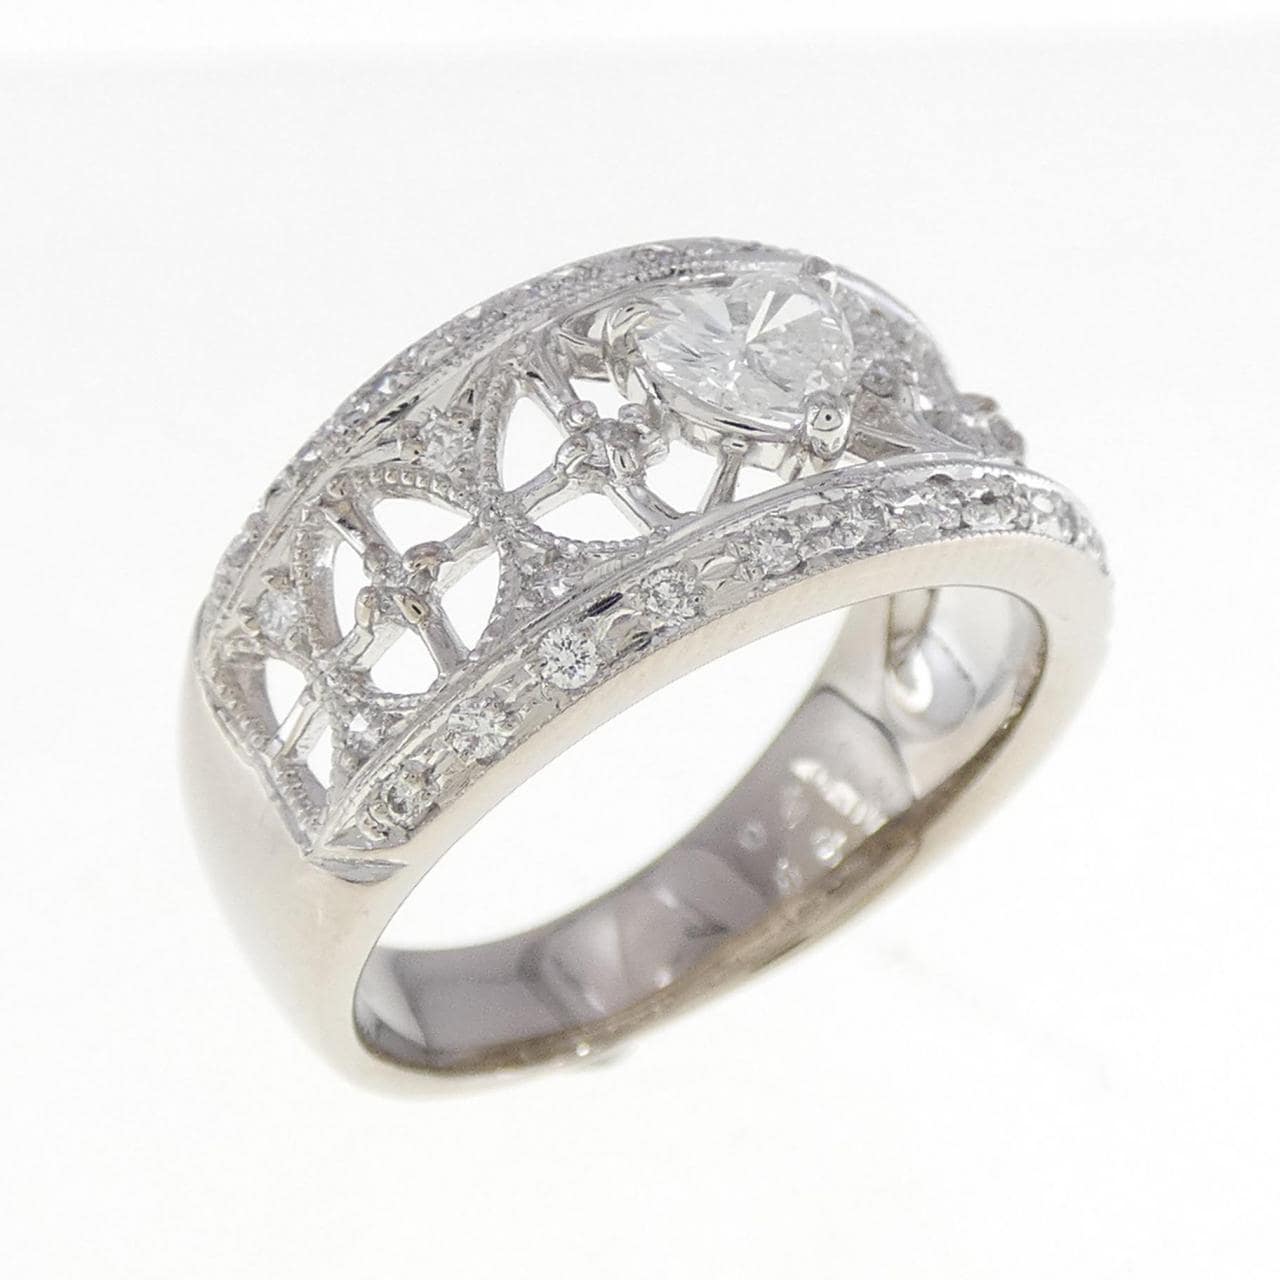 K18WG Diamond Ring 0.292CT E VVS1 Heart Shape